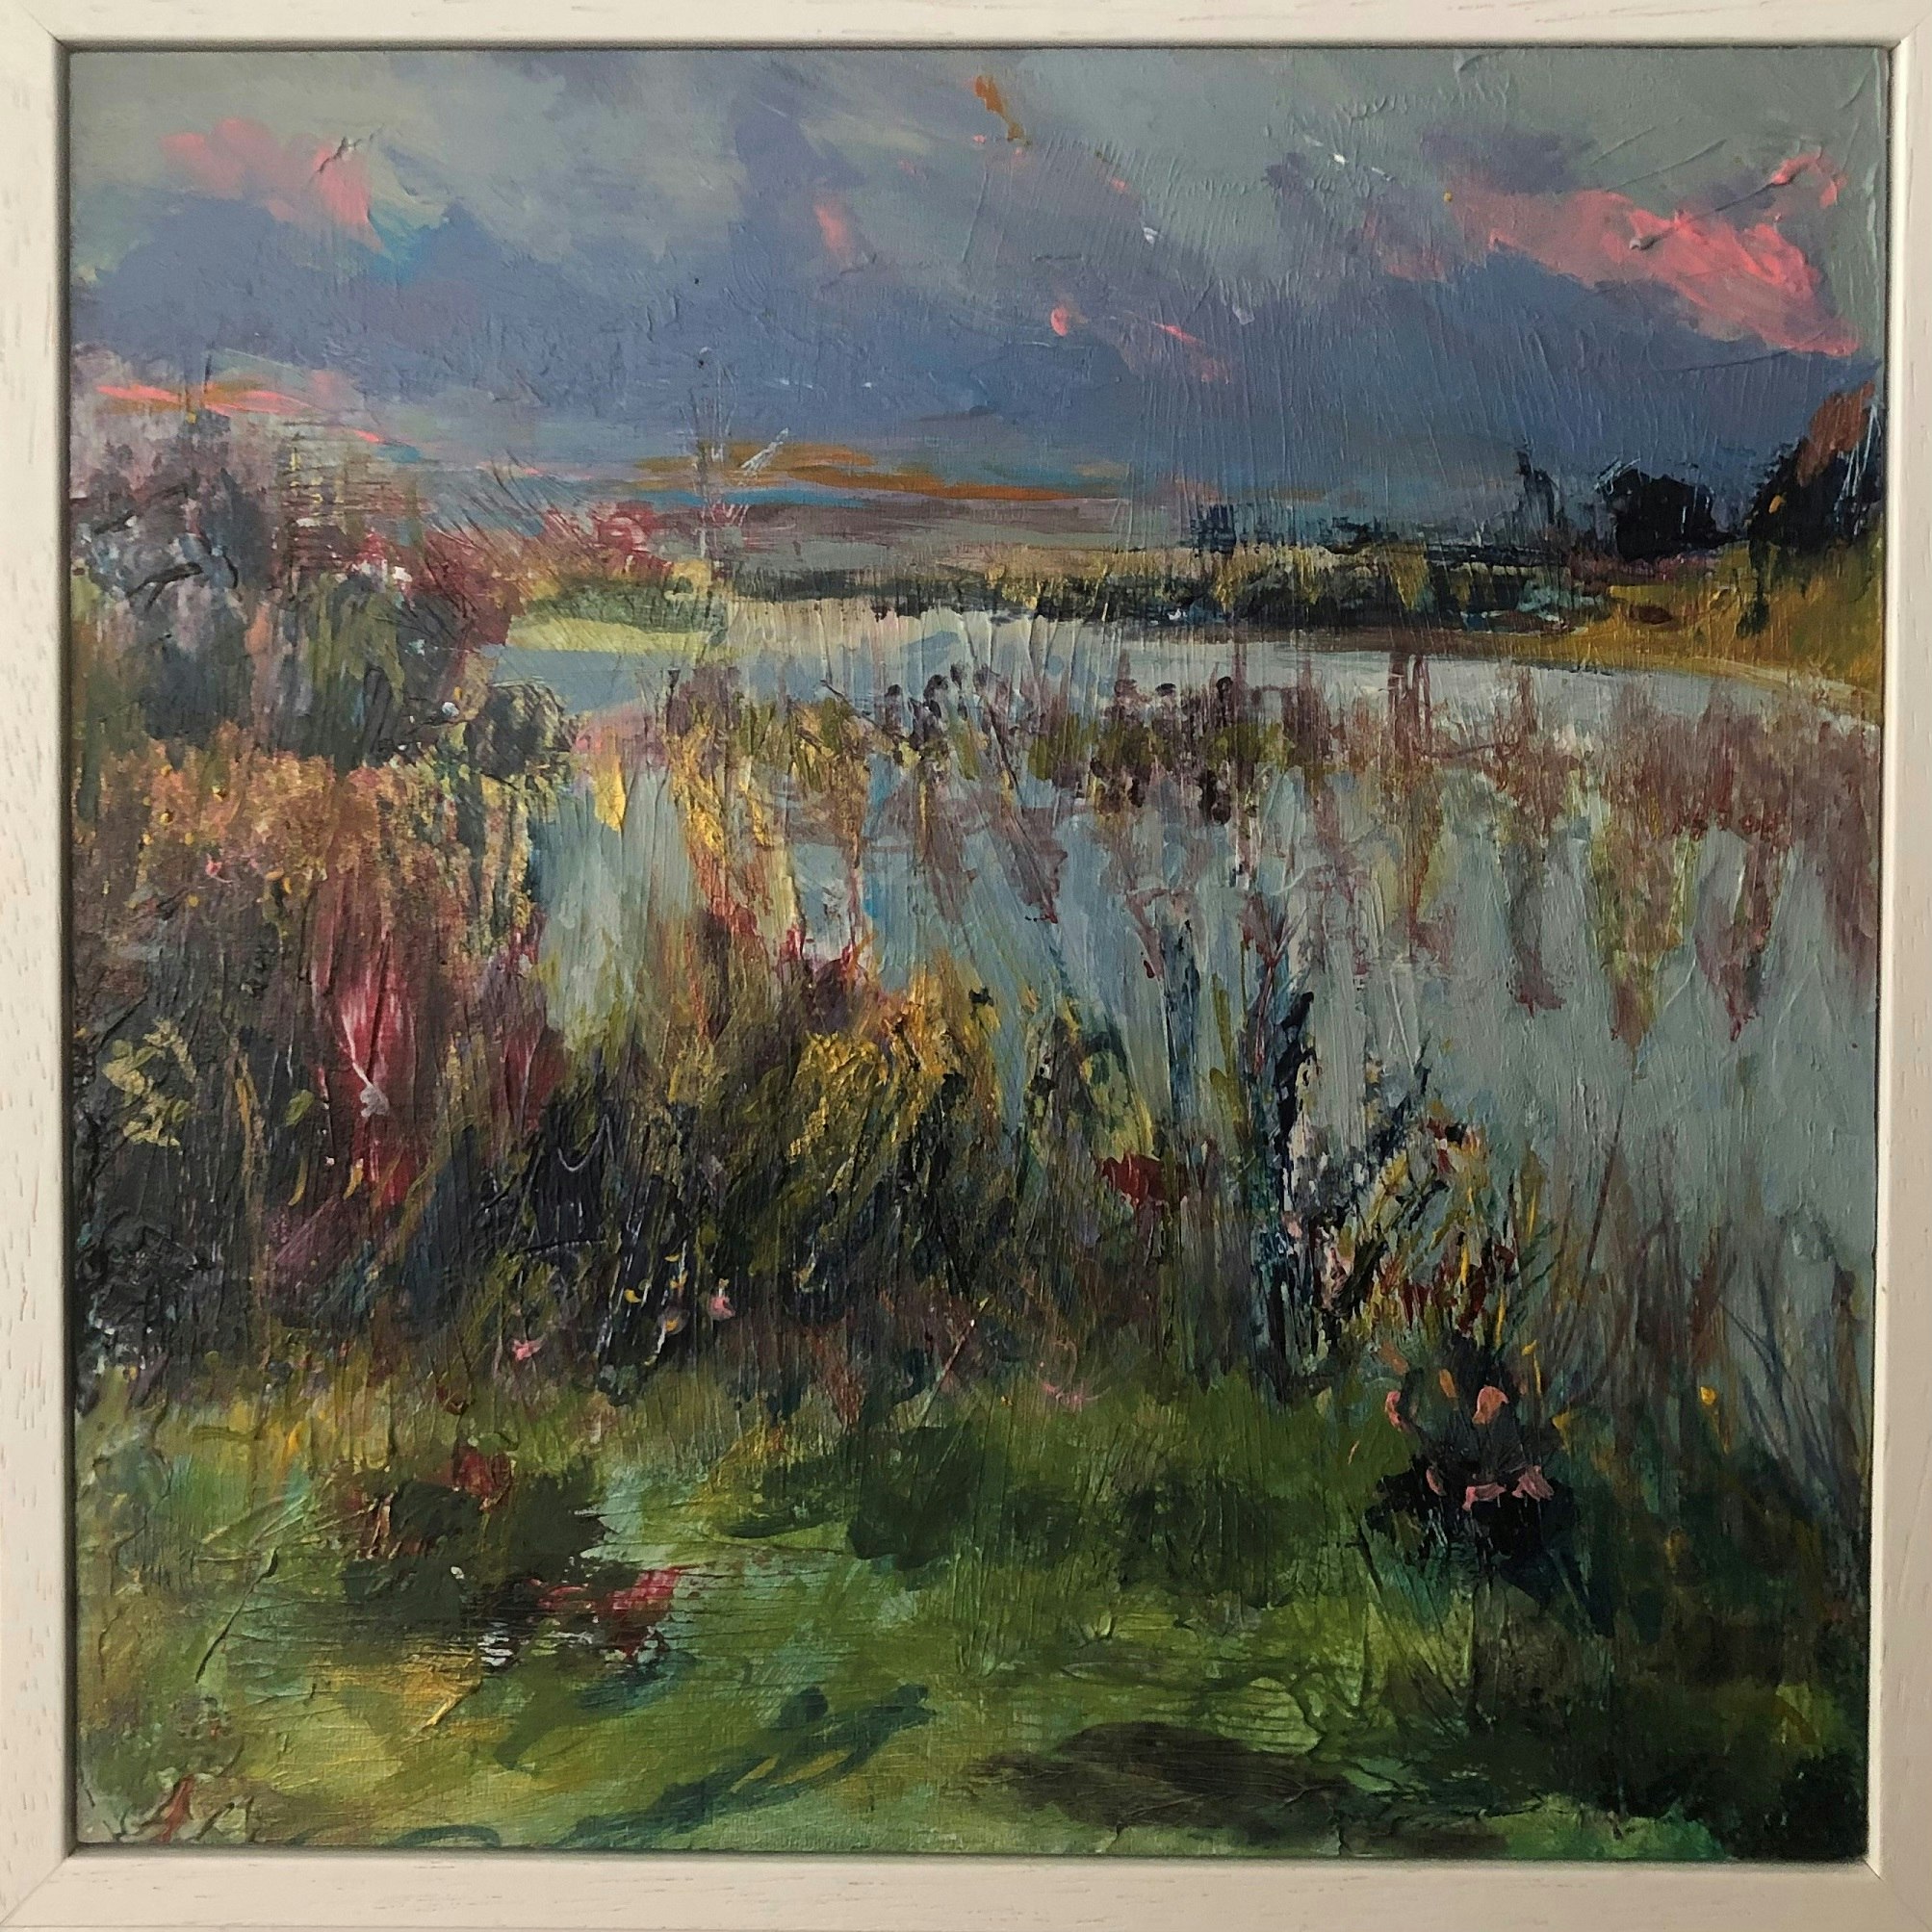 A landscape painting by Rachel Davis